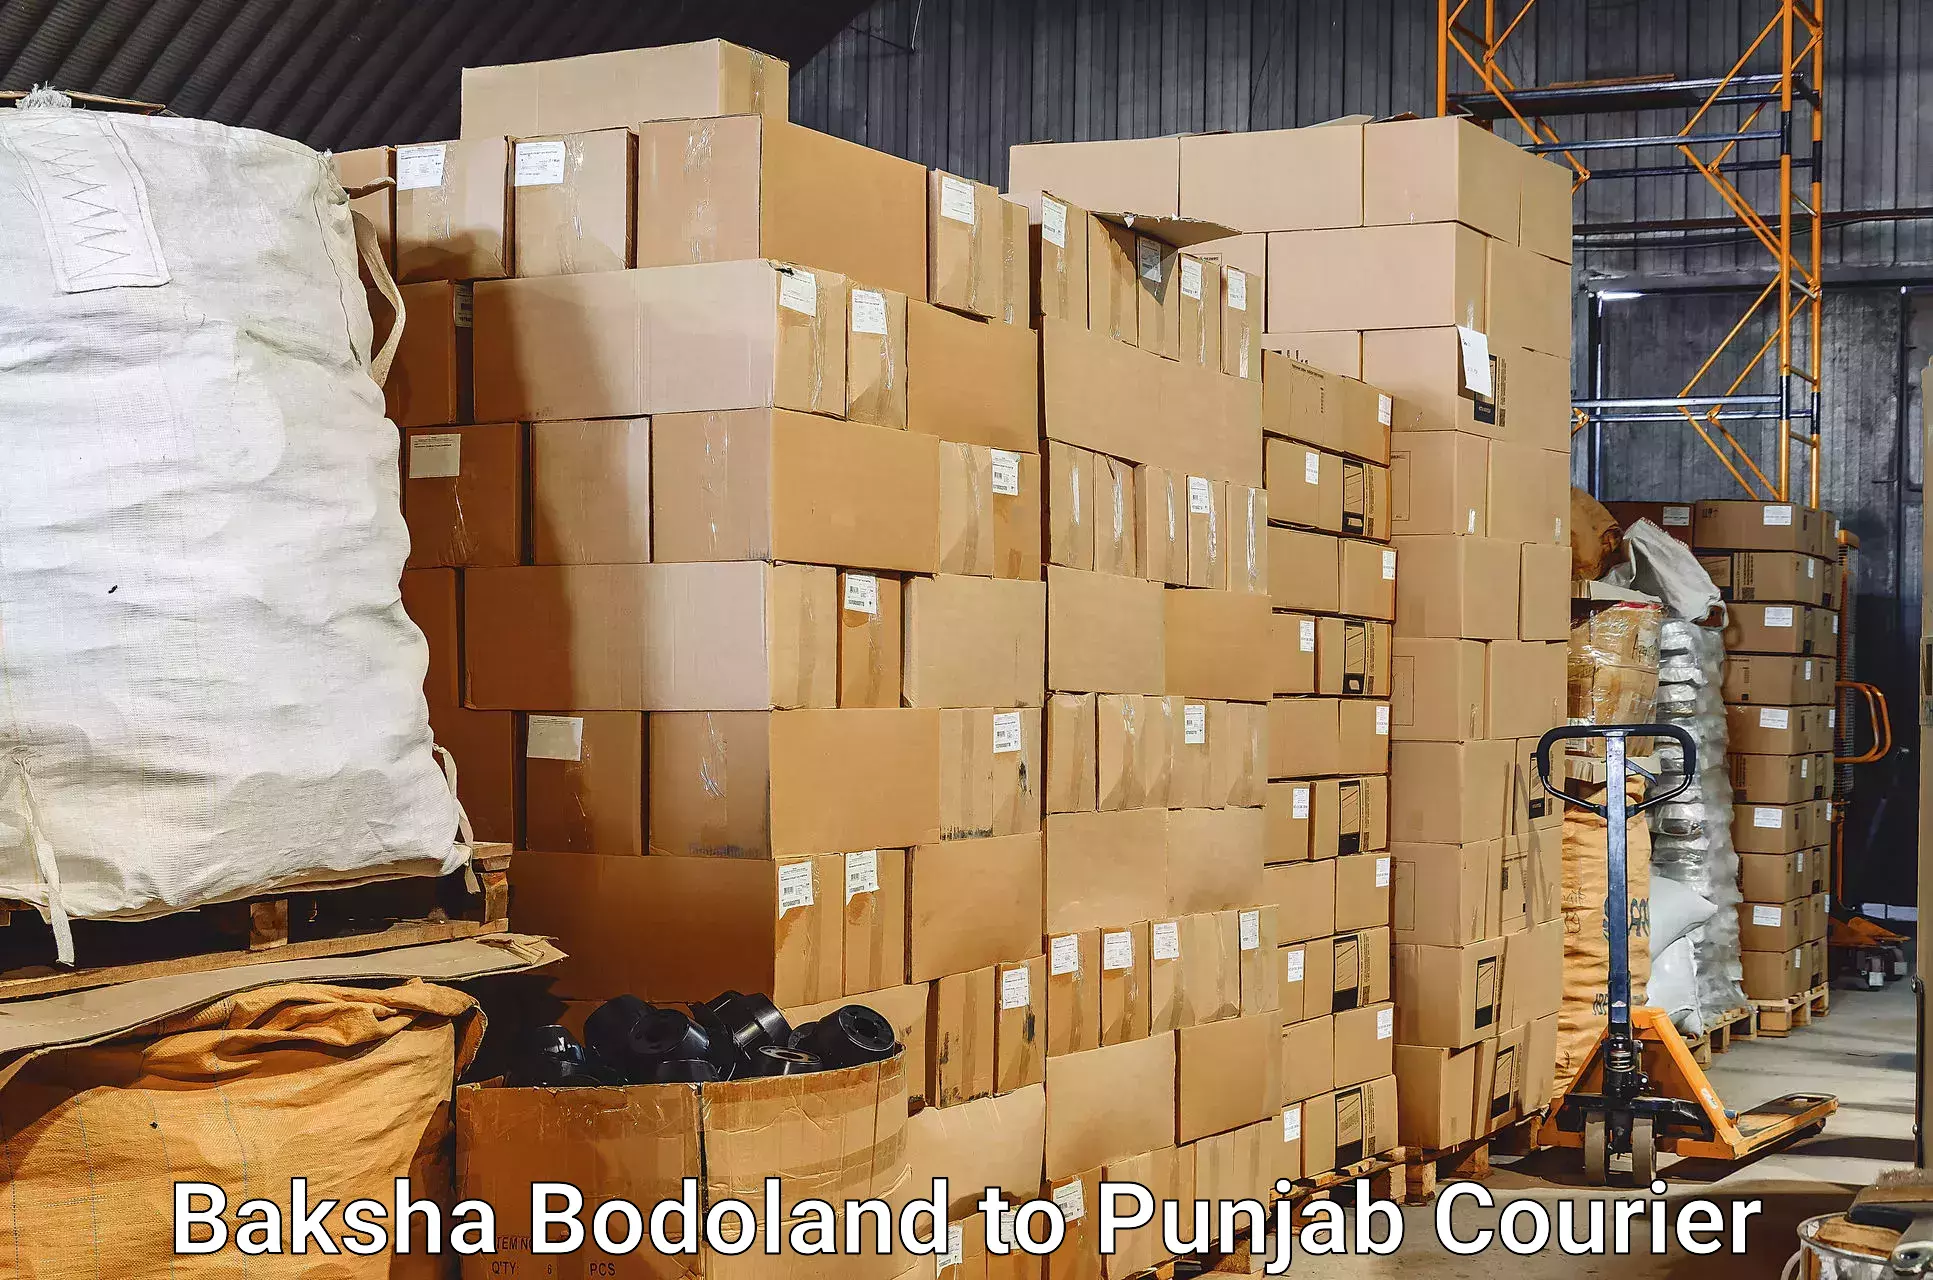 Baggage transport services Baksha Bodoland to Goindwal Sahib